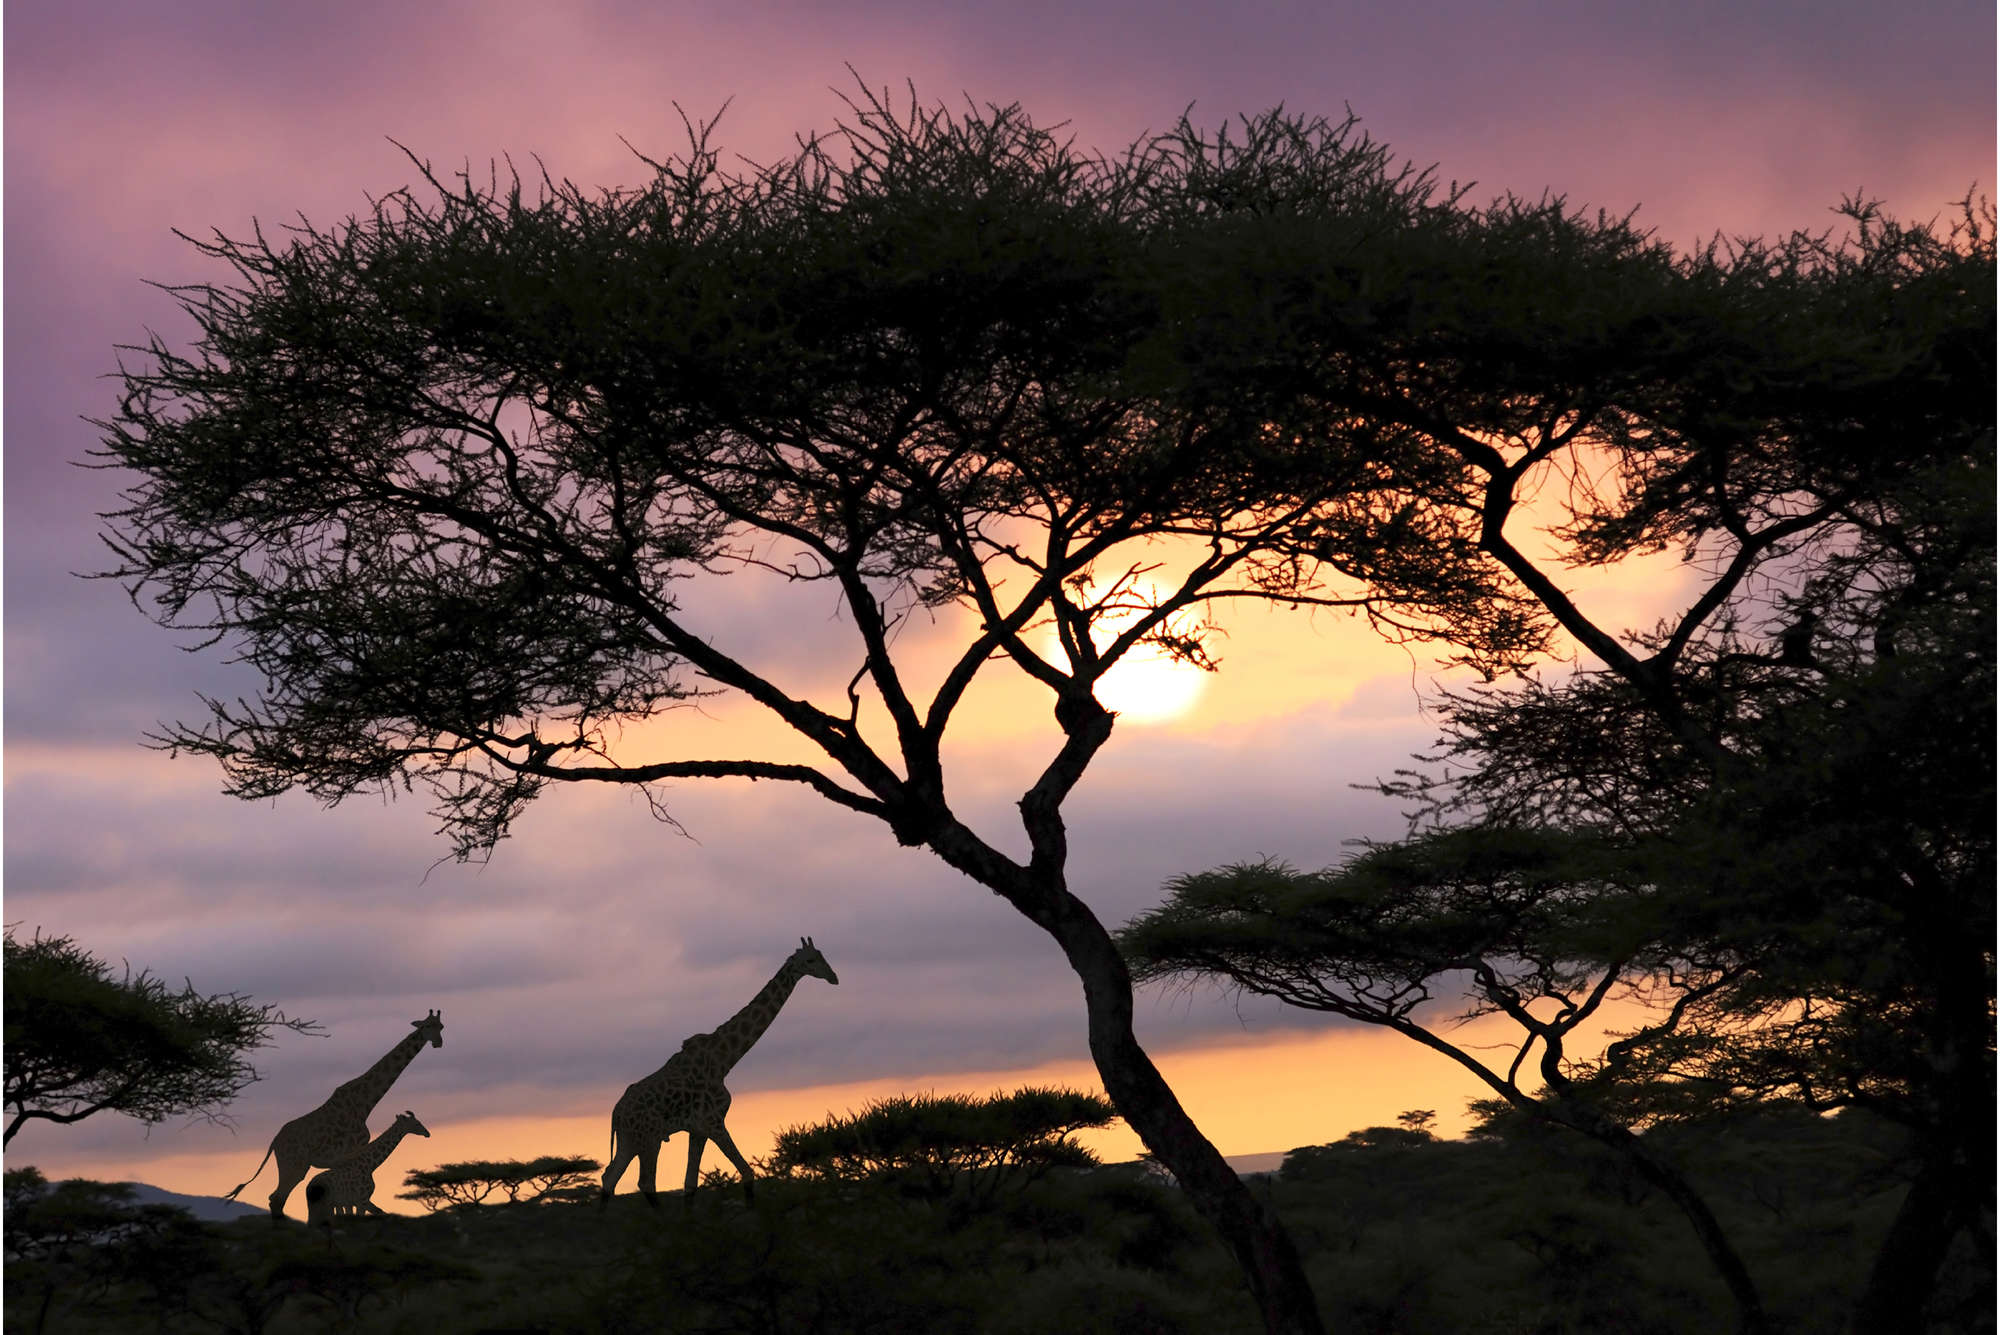             Fotomural Savannah con jirafas - tejido no tejido liso de alta calidad
        